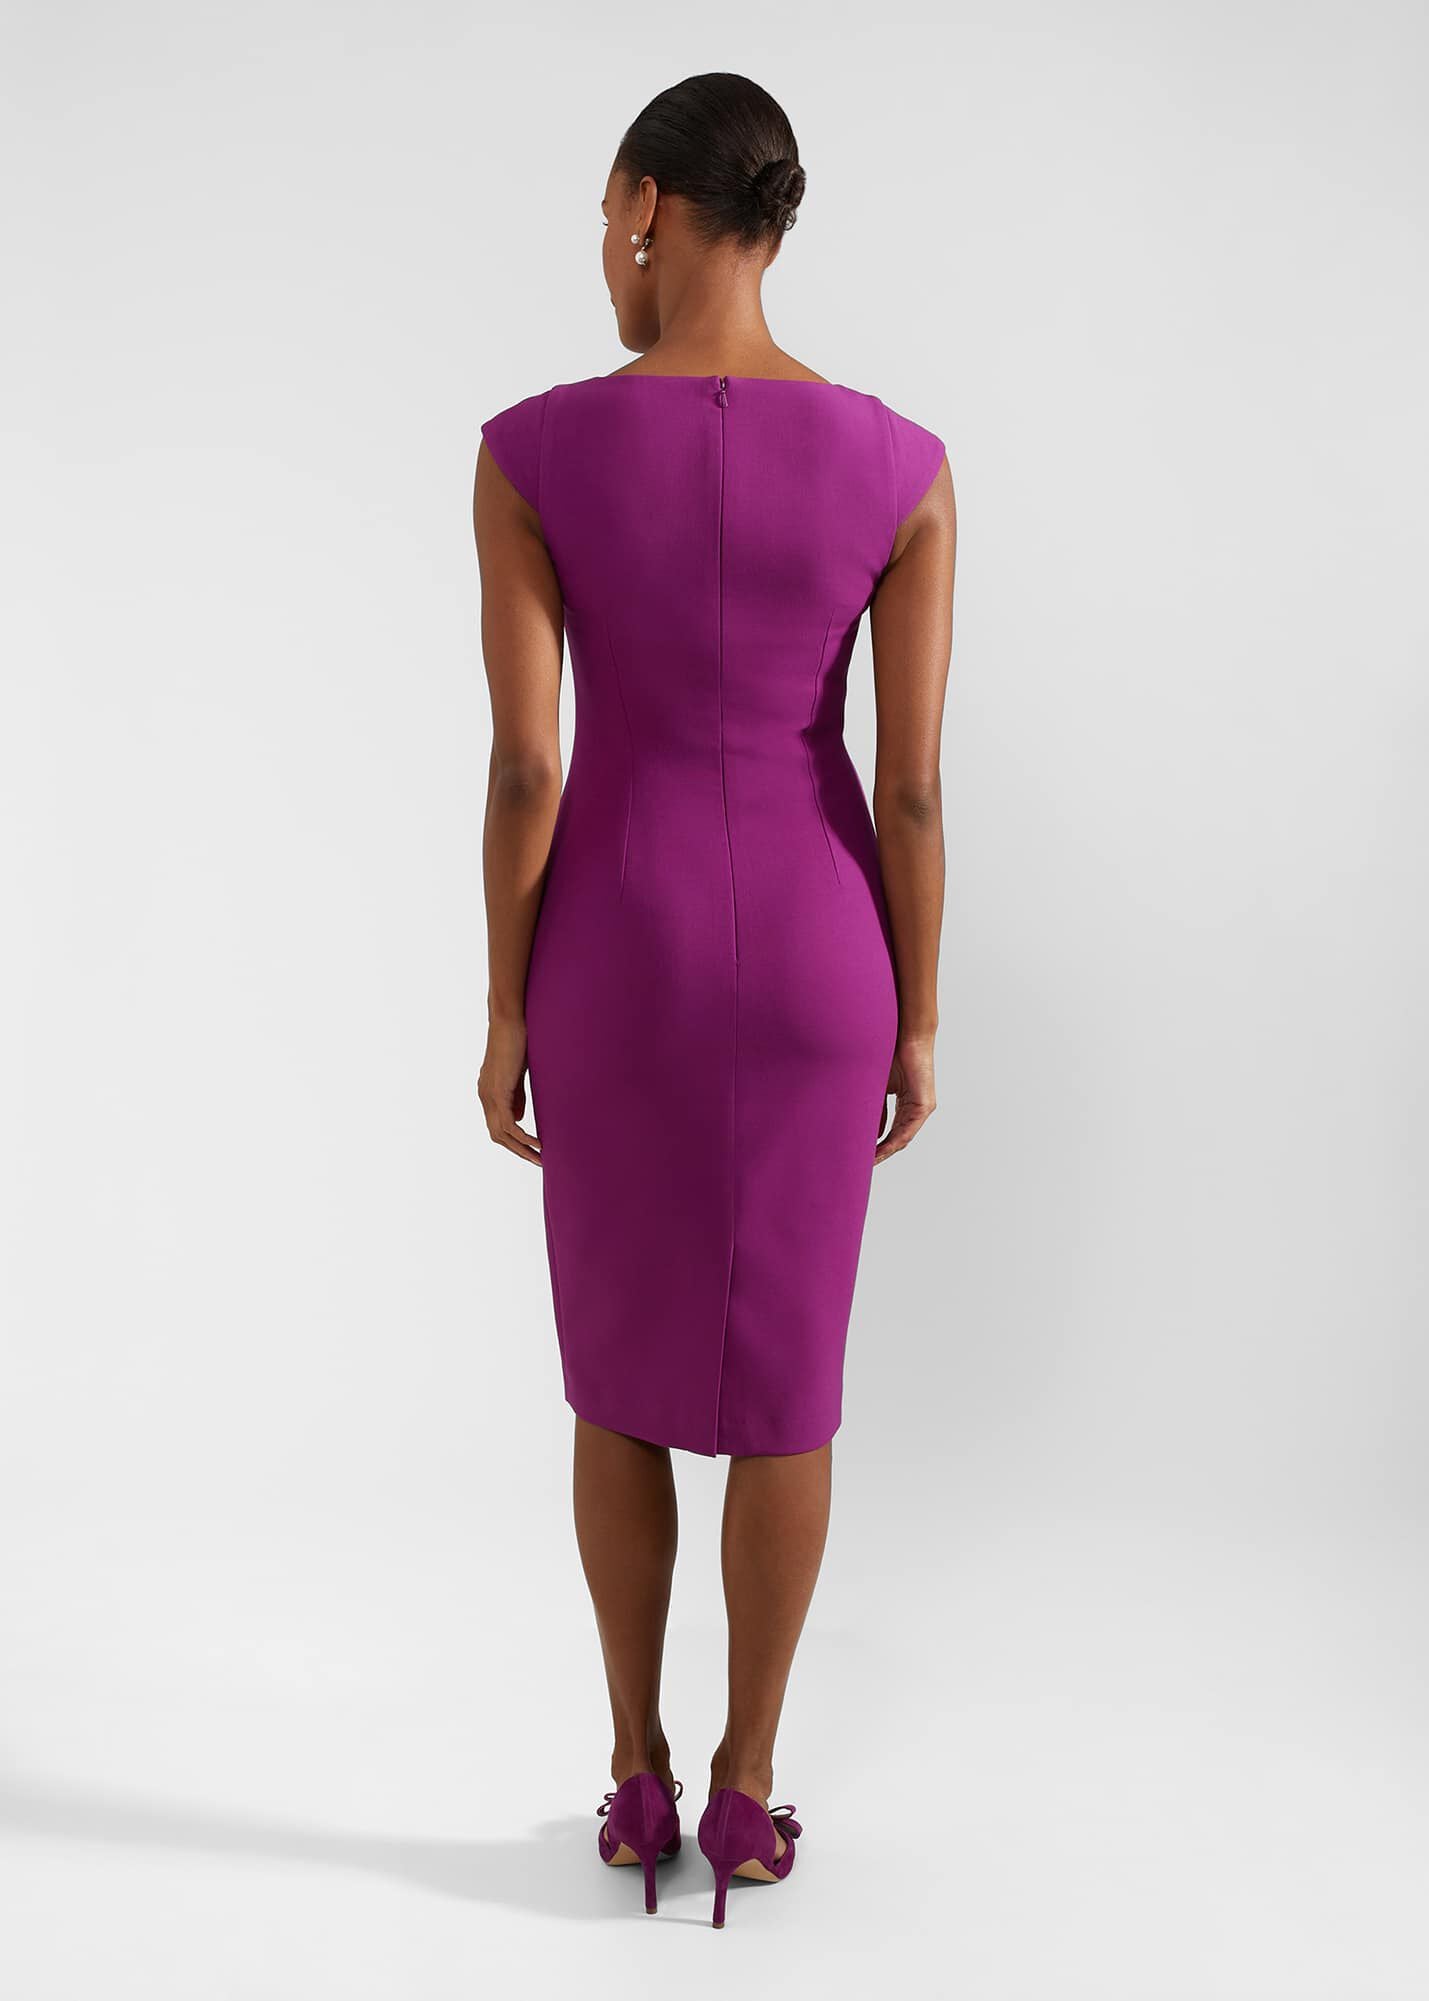 Lillia Dress 0124/5239/9845l00 Magenta-Purple